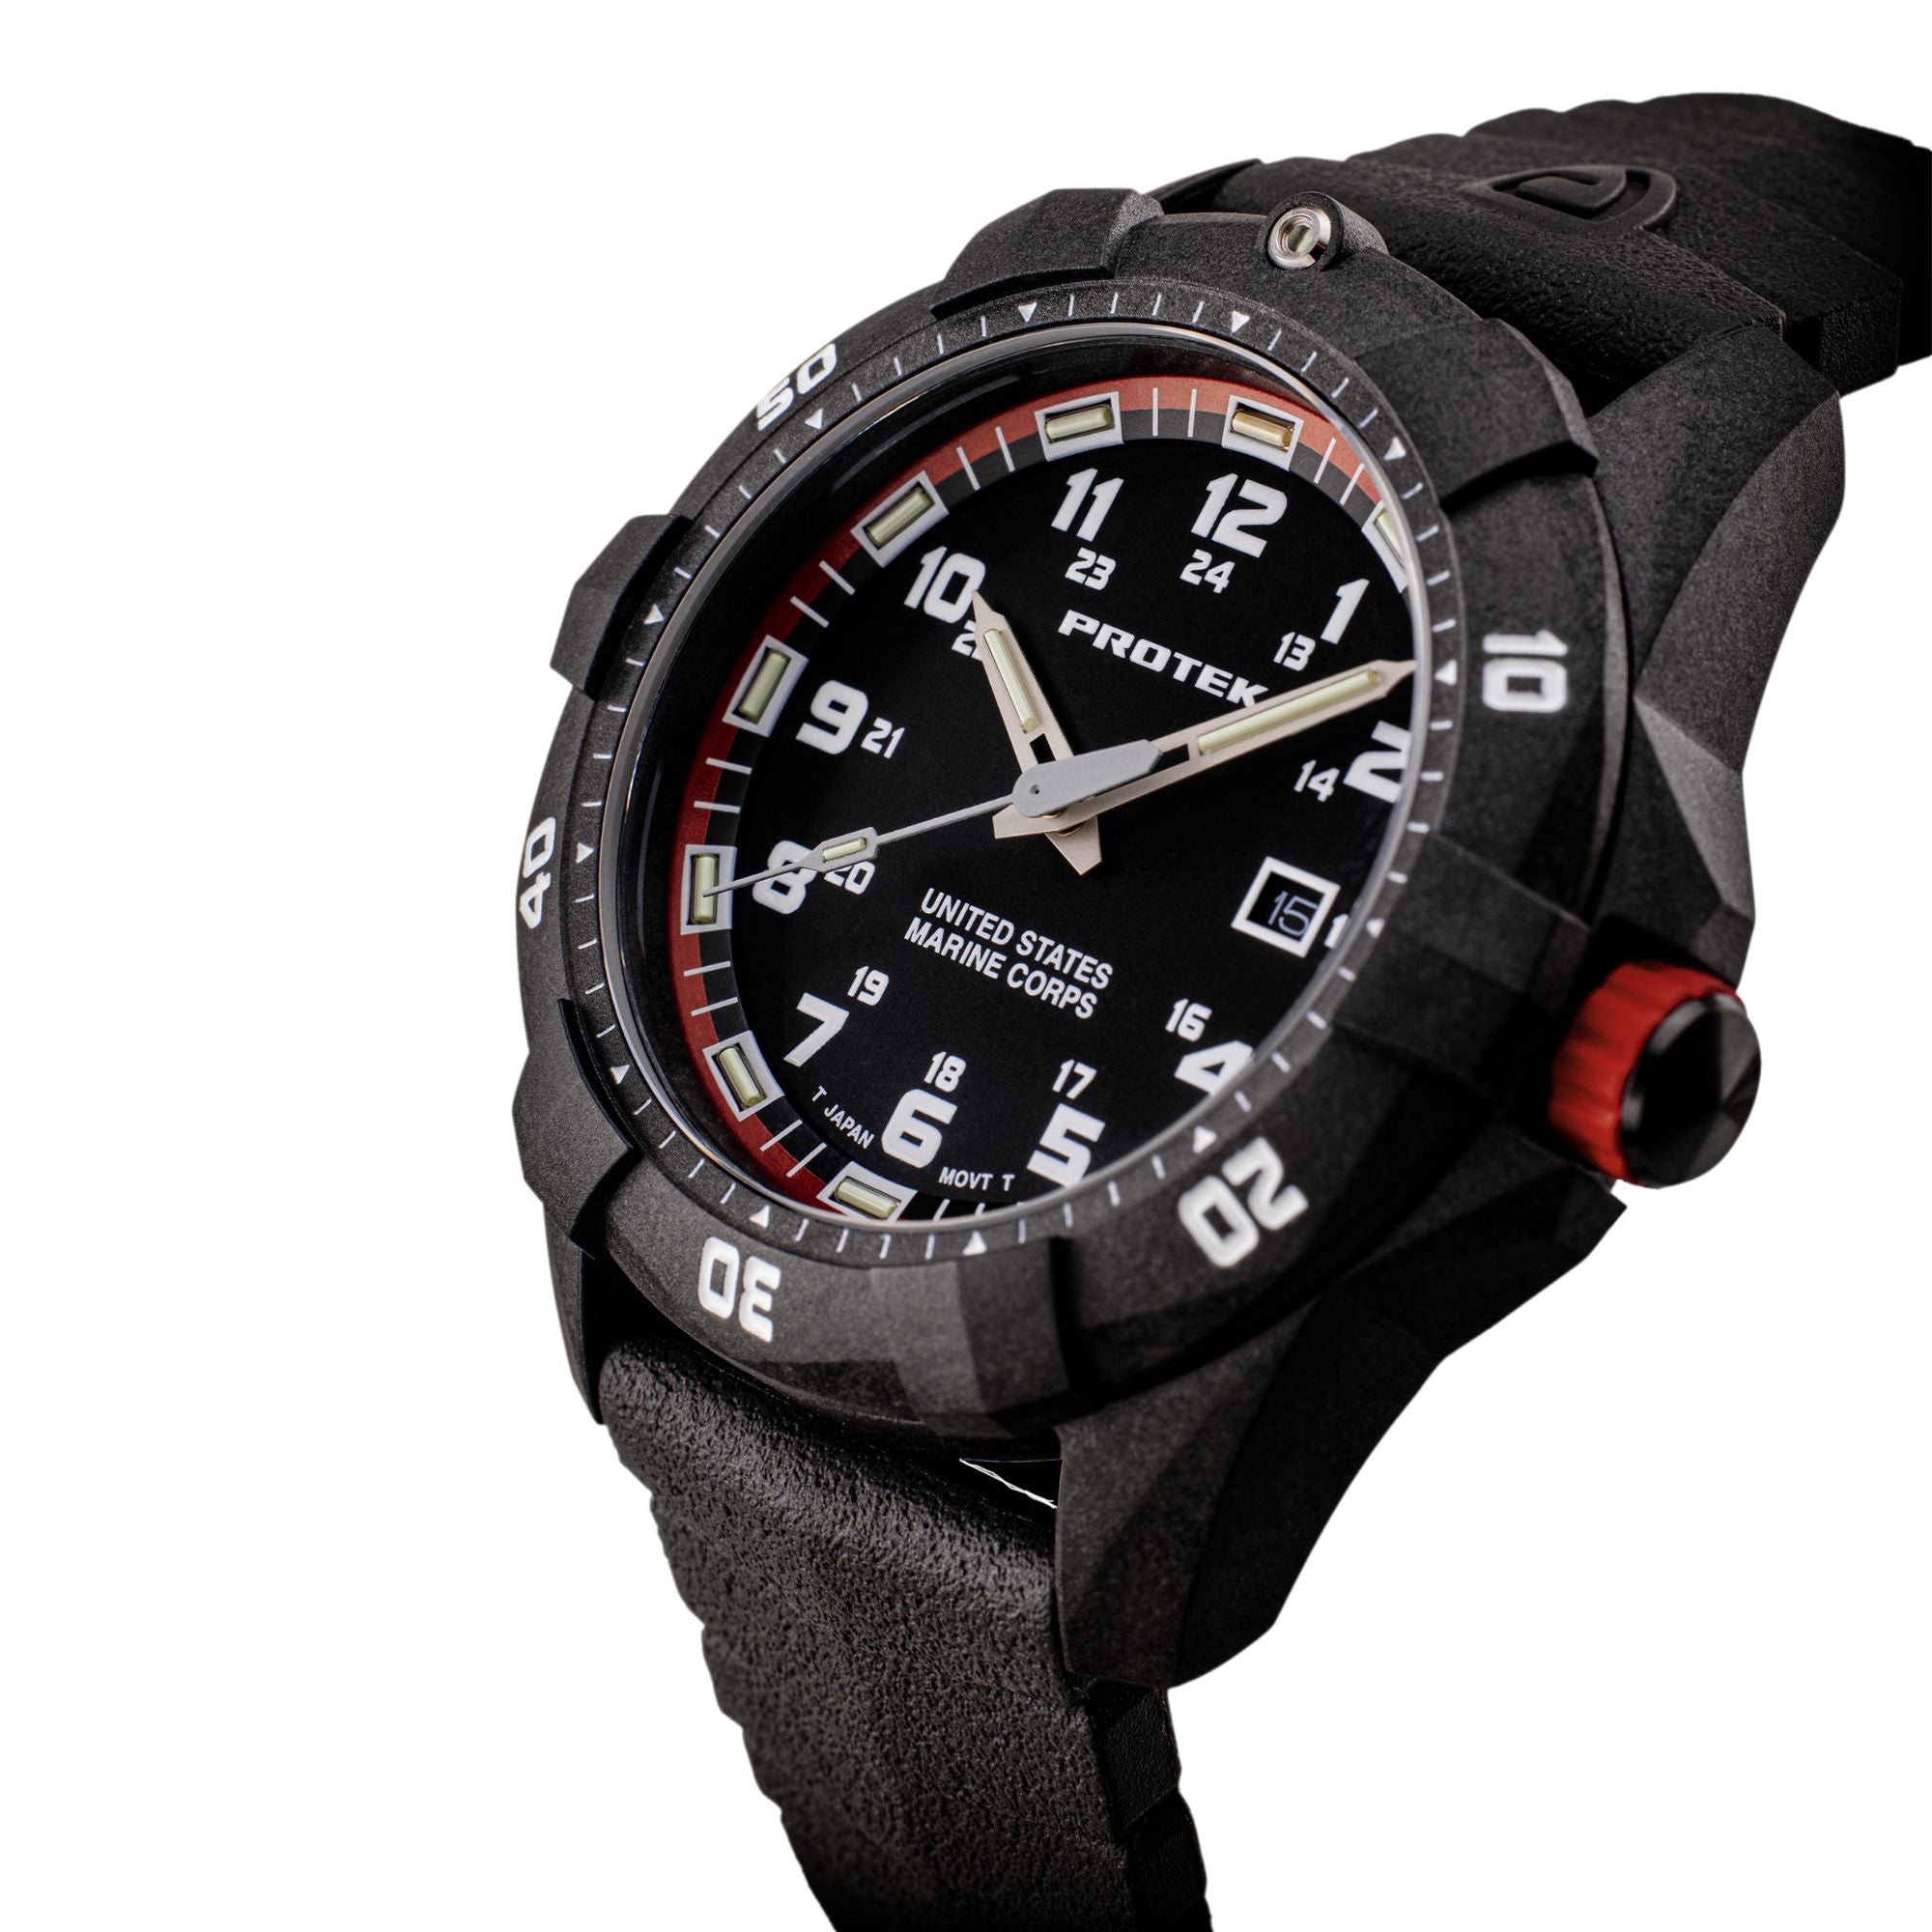 ProTek USMC Carbon Composite Dive Watch - Carbon/Black/Red (Black Band)